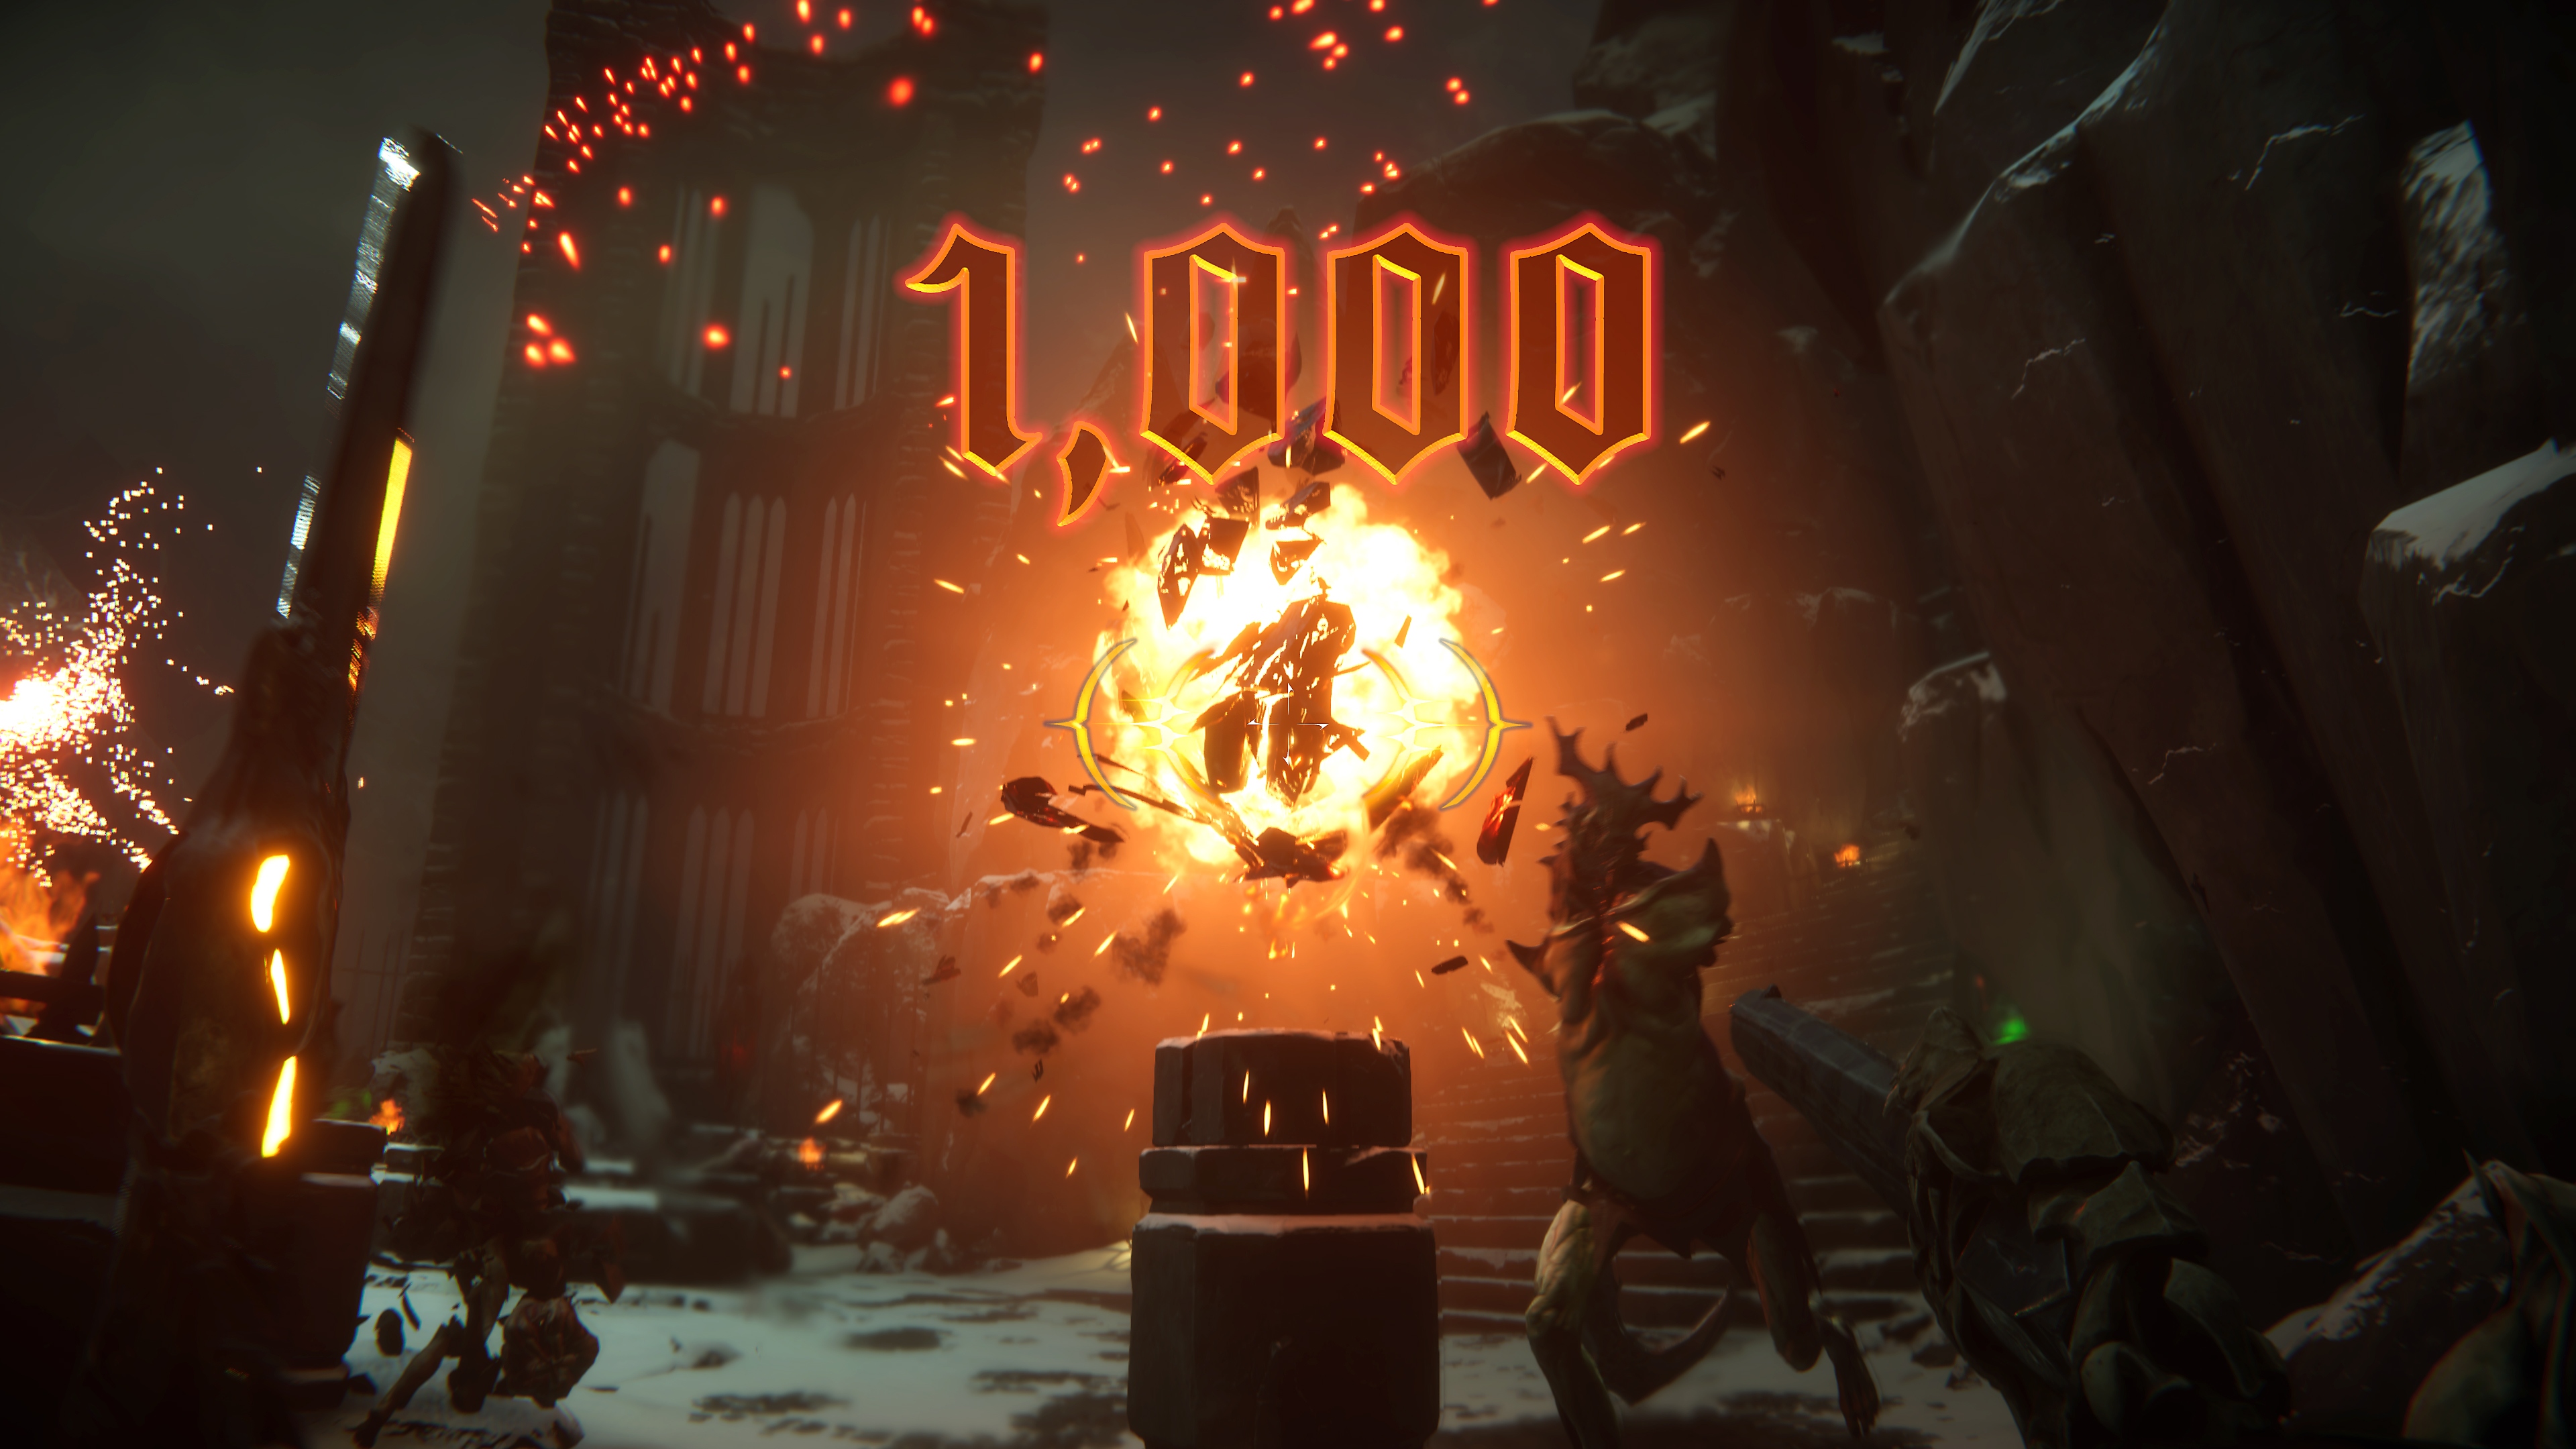 Metal Hellsinger στιγμιότυπο που απεικονίζει μια μεγάλη έκρηξη στο κέντρο και ένδειξη «1.000» πόντων στην οθόνη.